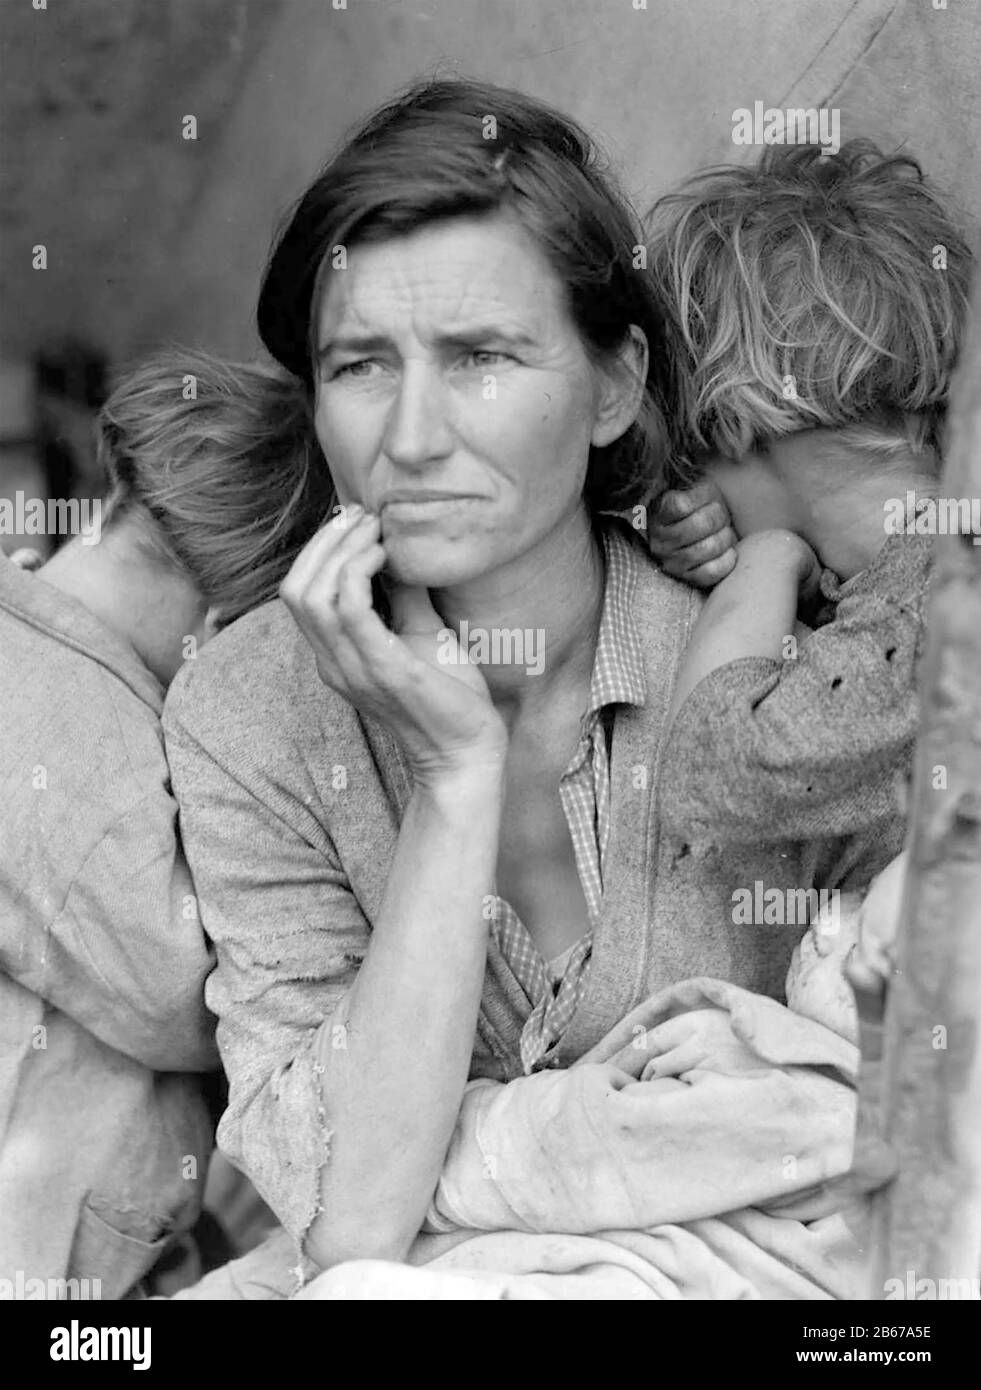 MIGRANTENMUTTER der amerikanischen Fotojournalistin Dorothea lange (1895-1965). Florence Owens Thompson (1903-1983) ist das Thema ihres berühmtesten Fotos von Wanderarbeitern während der Weltwirtschaftskrise, das am 6. März 1936 aufgenommen wurde. Foto: Kongressbibliothek Stockfoto